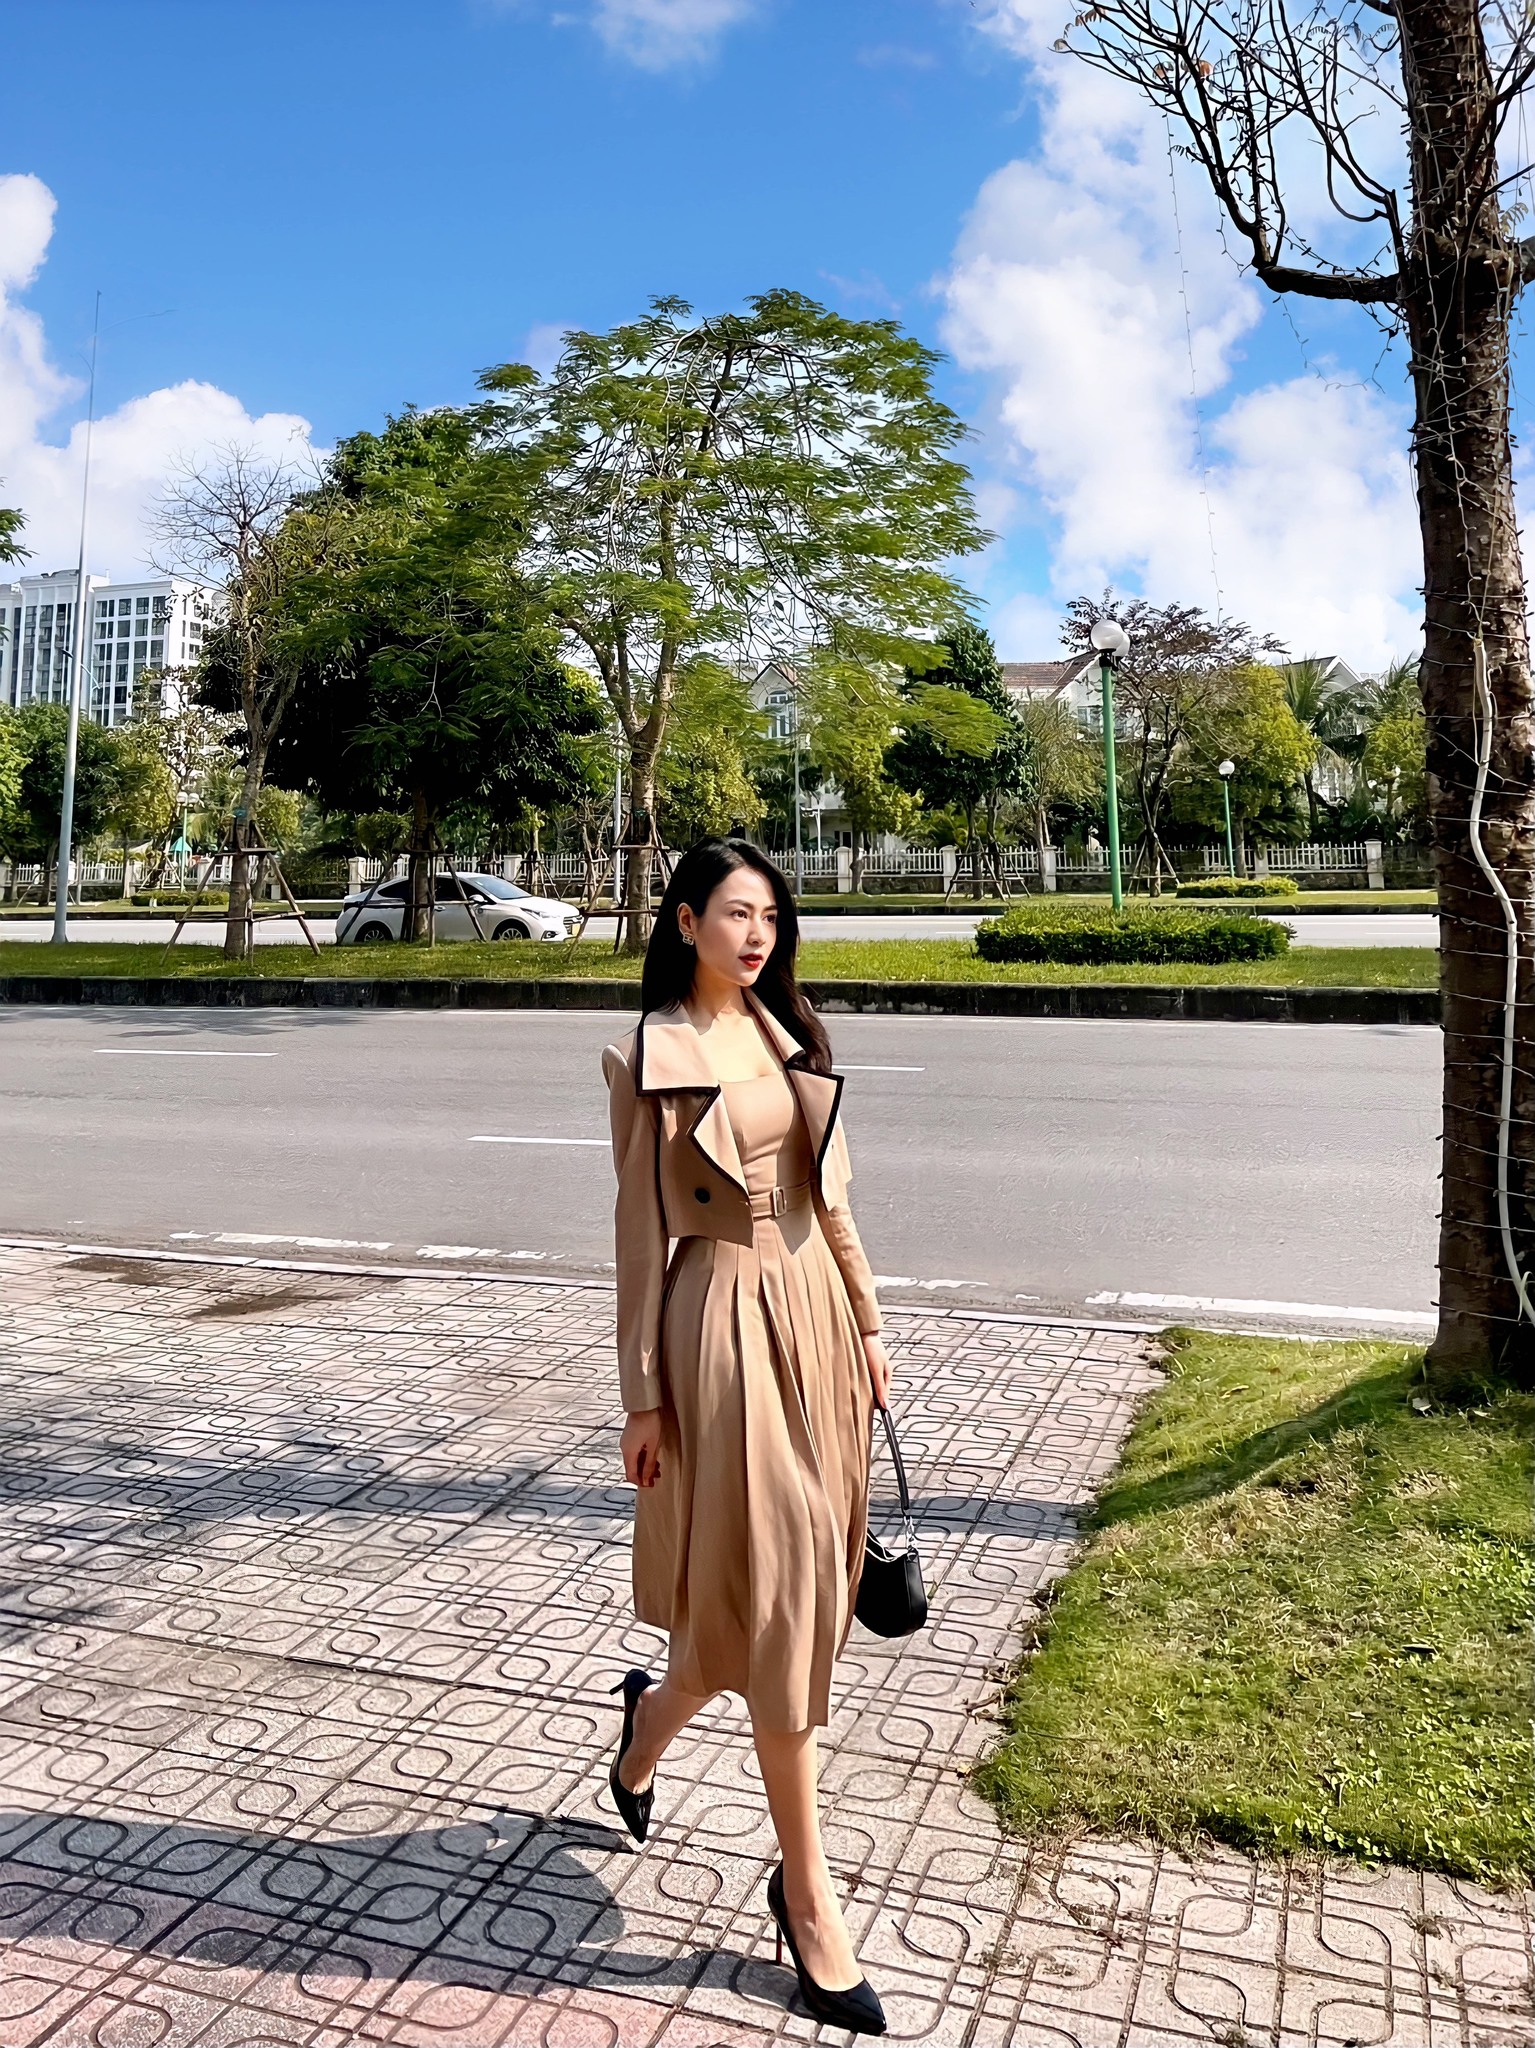 Mỹ nhân “mặc đẹp nhất phim Việt” sắm đồ local brand như cơm bữa, gu thời trang sành điệu cực đáng để chị em follow - Ảnh 1.